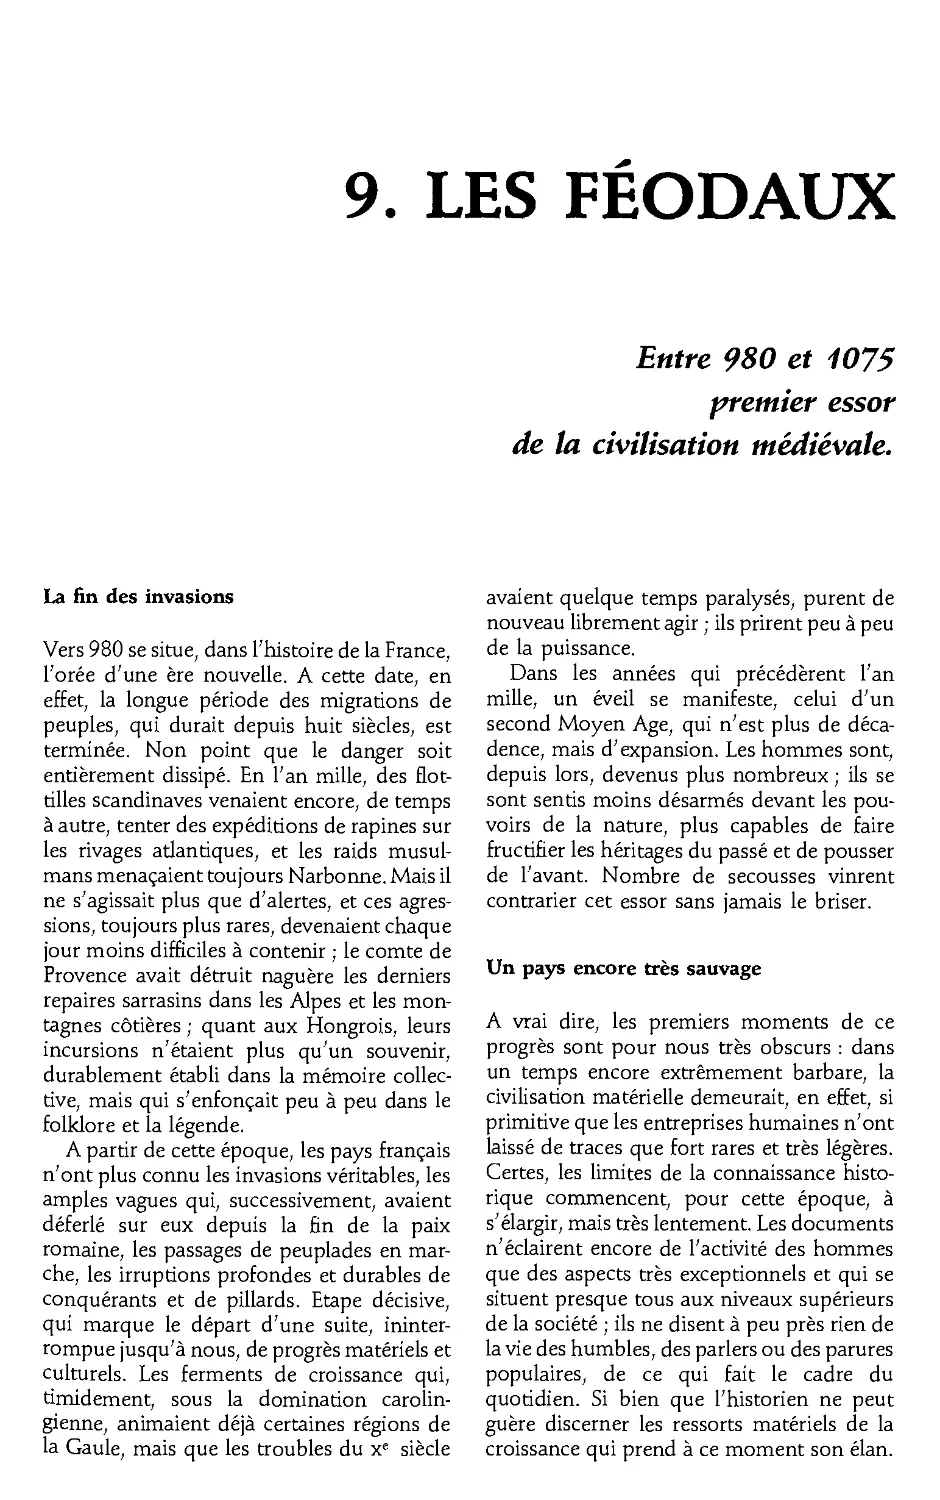 9. Les feodaux, 980-1075 [203]